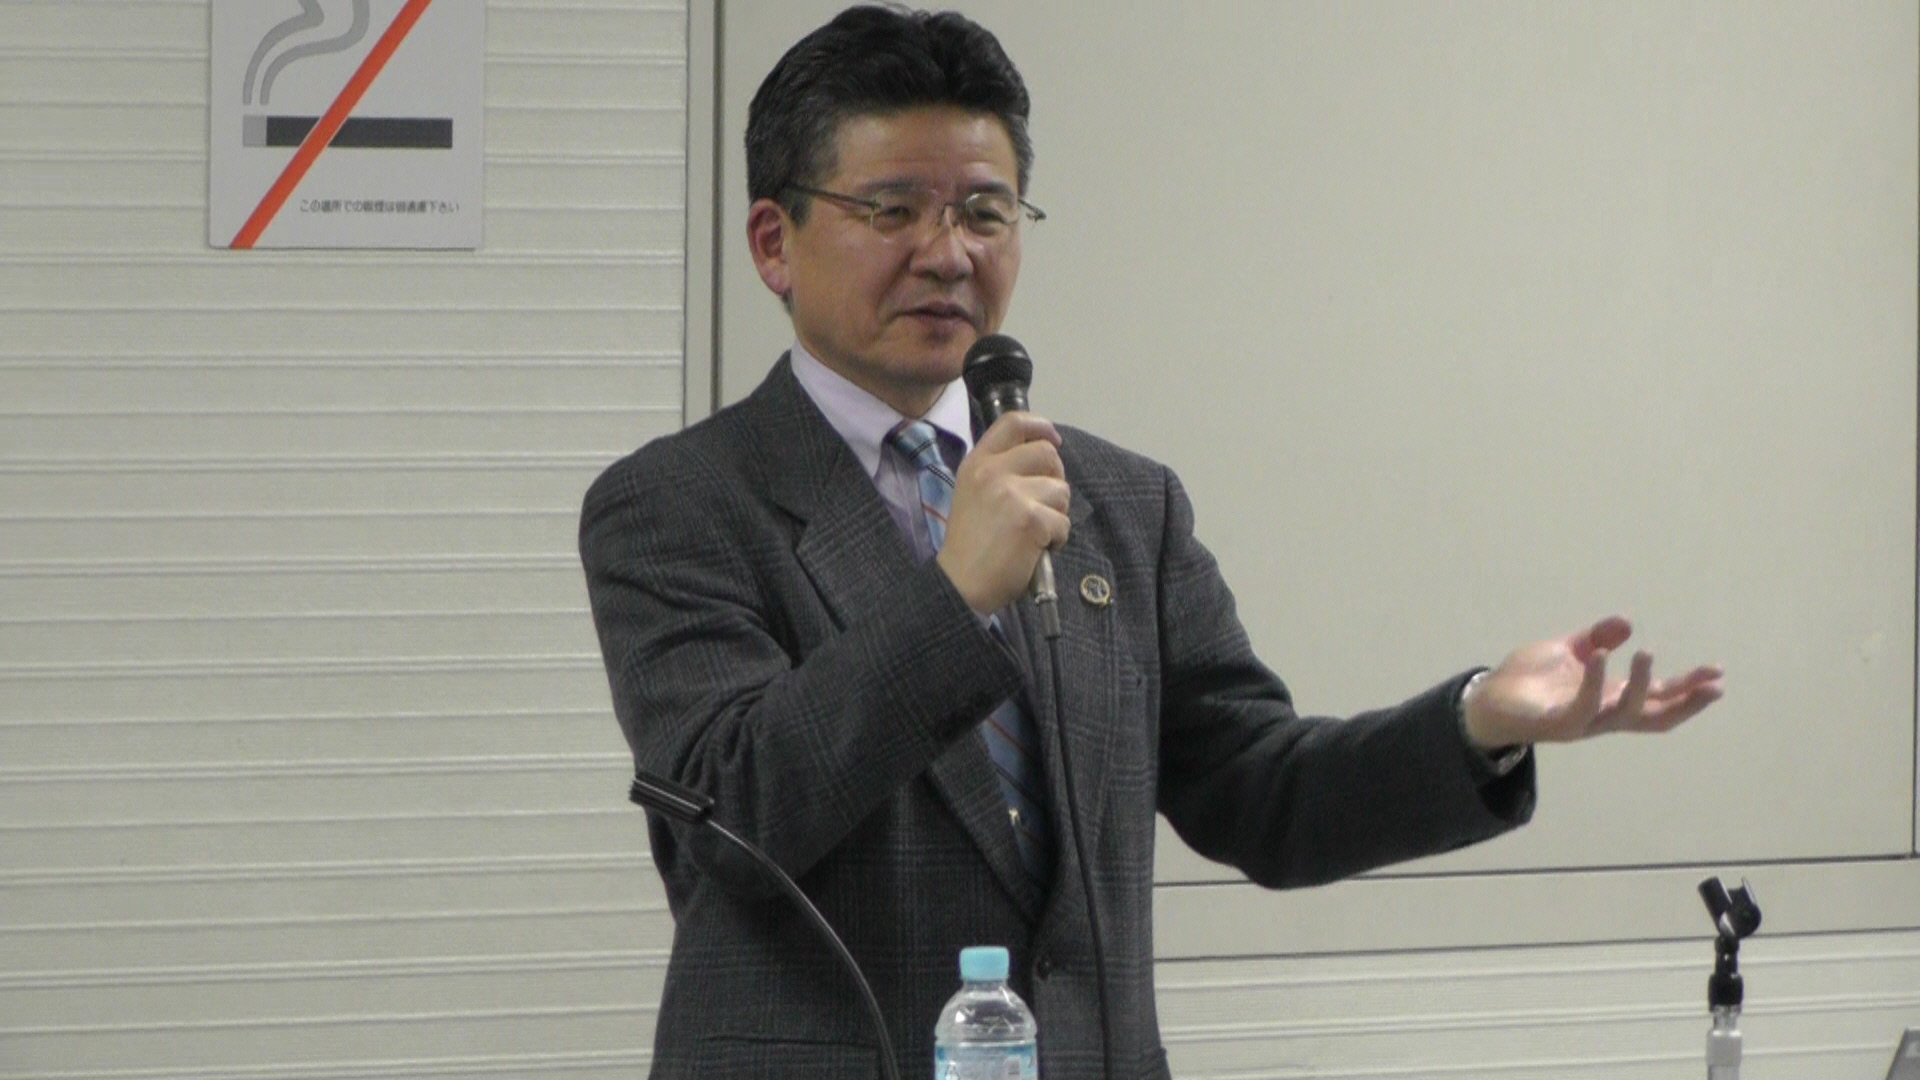 慶應フットケアチーム主催の第8回フットケア講演会が開催されました。